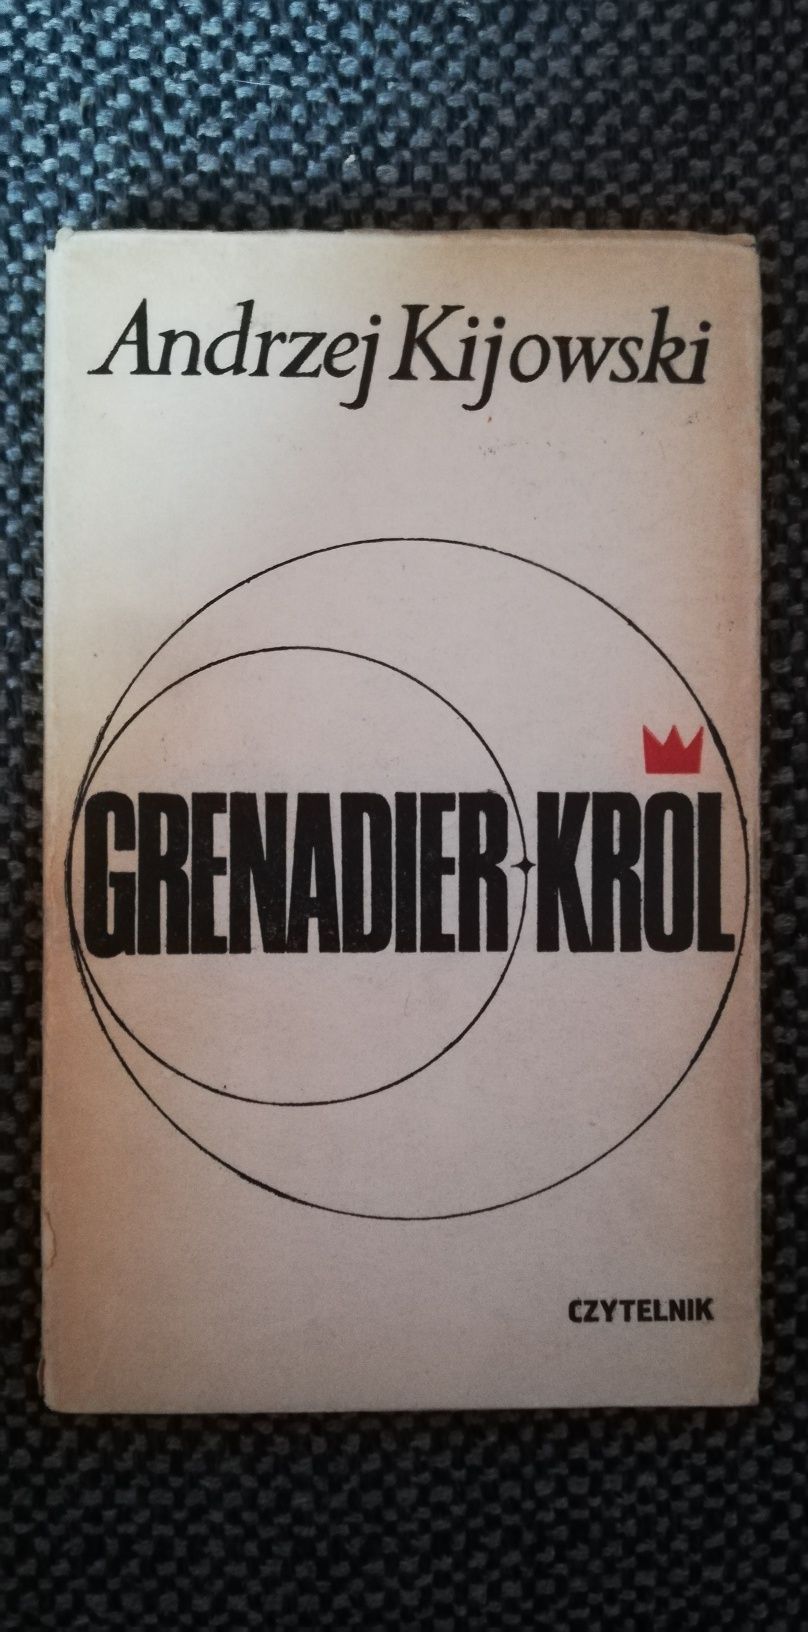 Grenadier król-Andrzej Kijowski